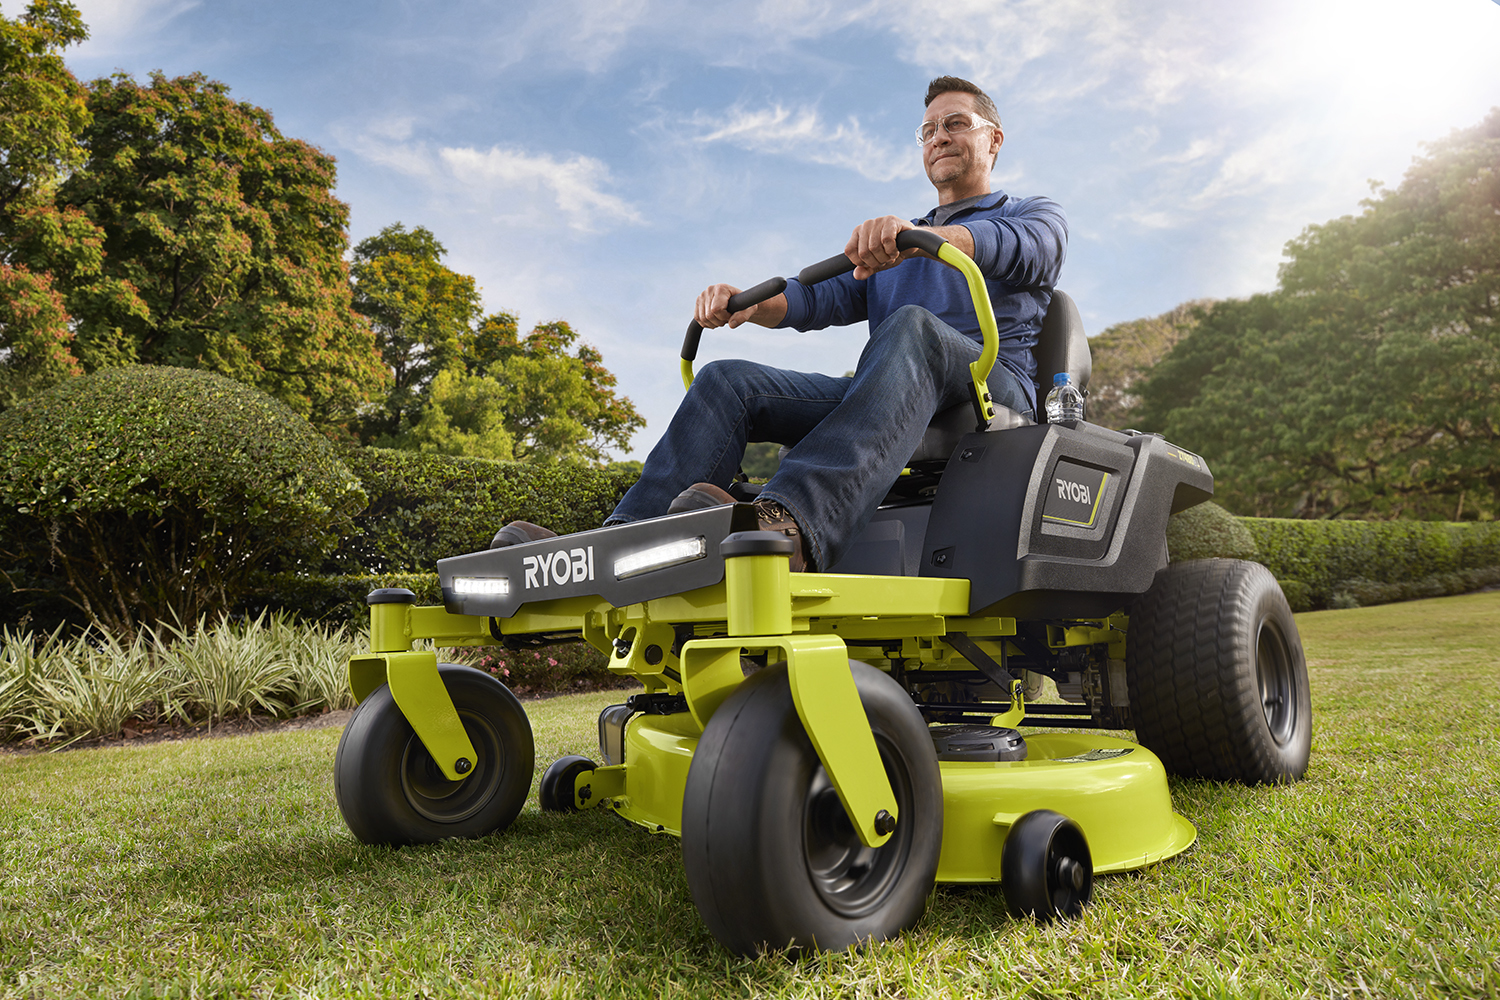 42 100 AH Zero Turn Electric Riding Lawn Mower - RYOBI Tools